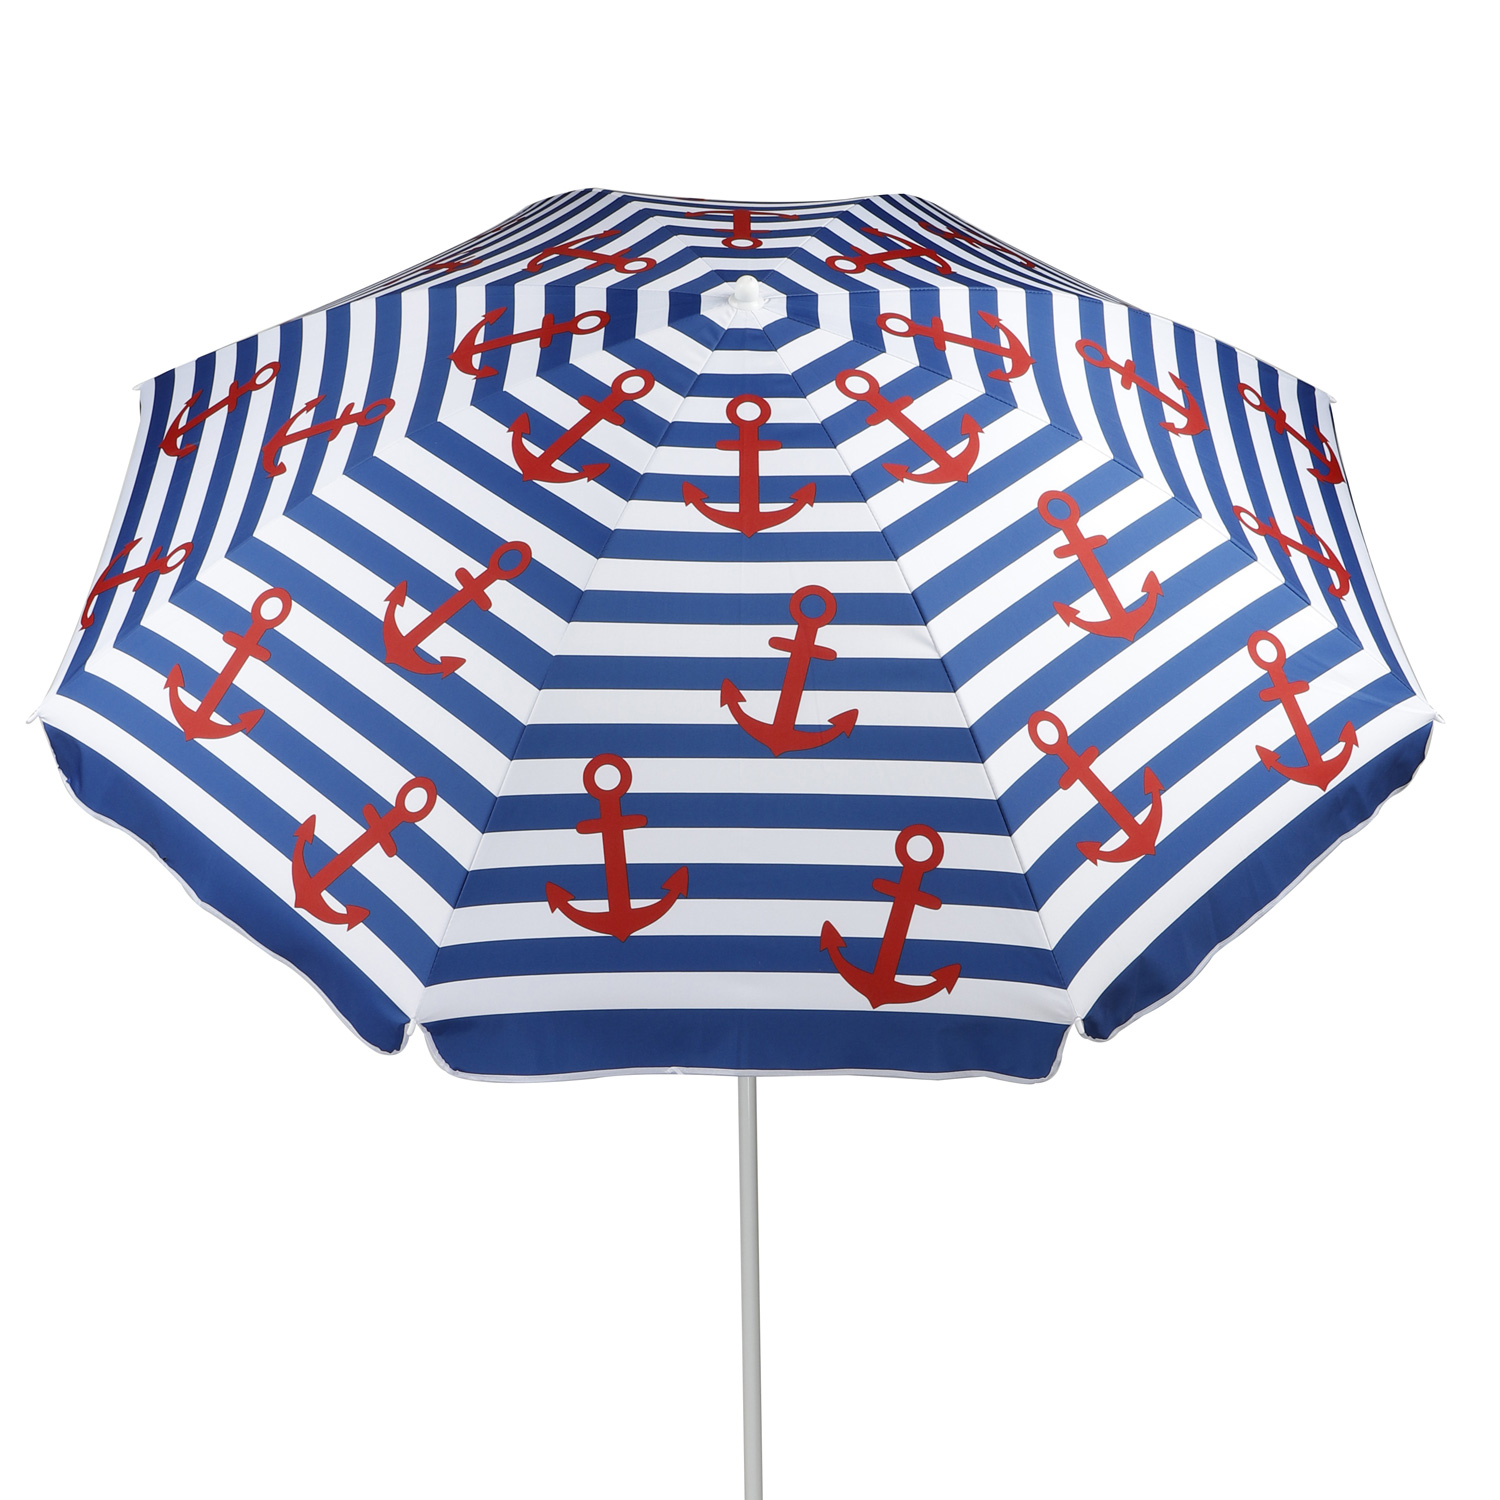 Sonnenschirm "Nordsee" - D: 200cm - 50+ UV Schutz - Knickgelenk